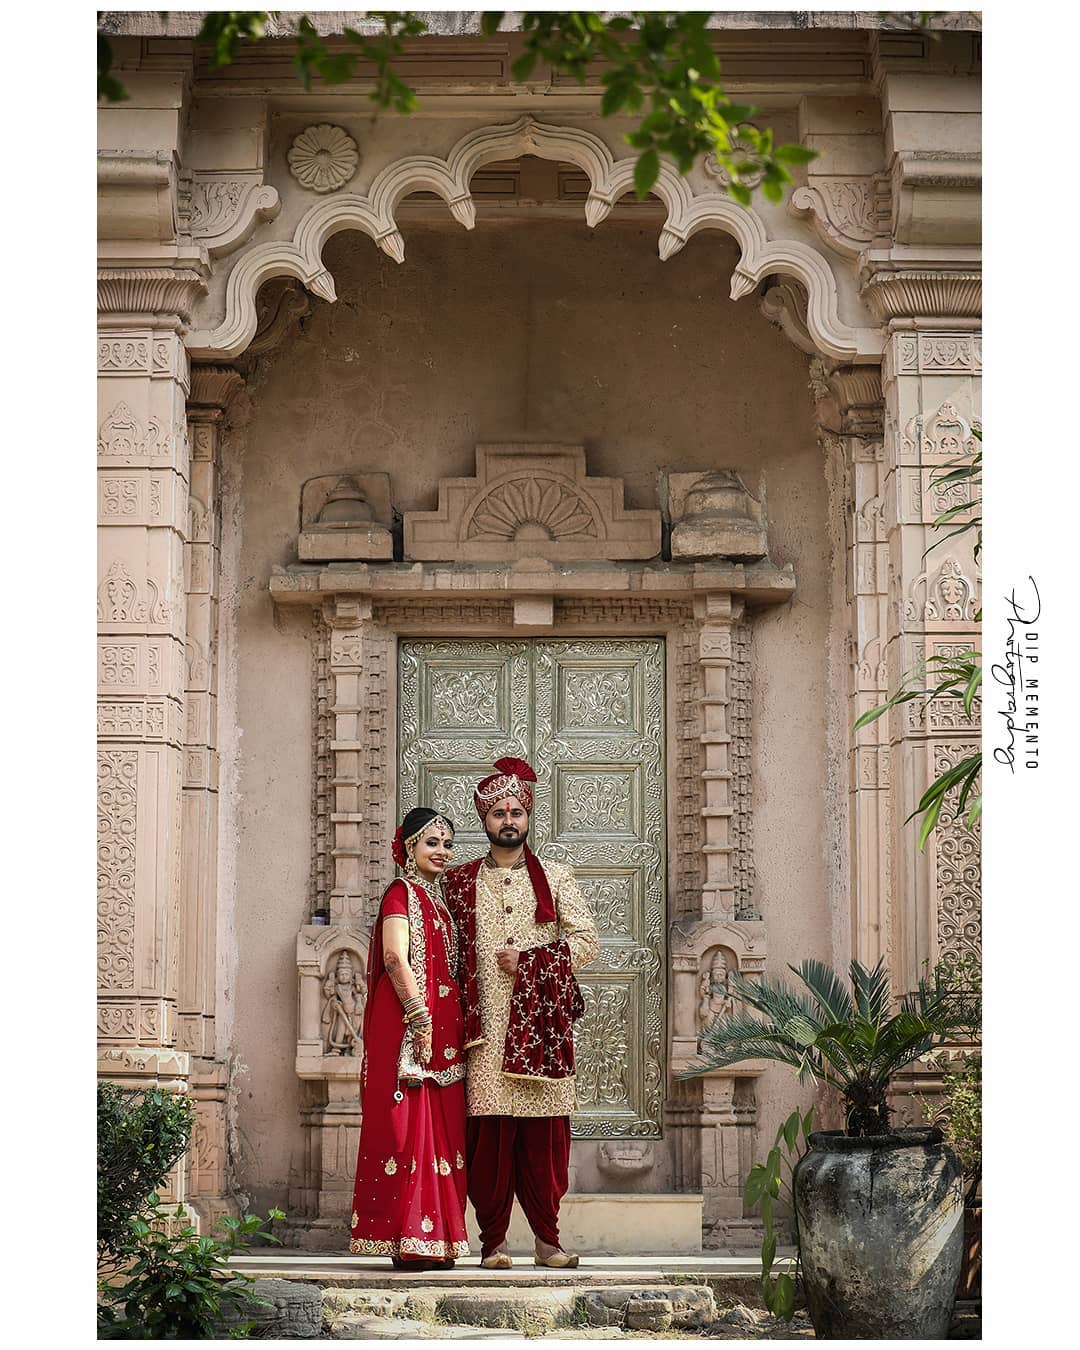 Mihir + Anjali Wedding Diaries
.
. 
#bigfatindianwedding
#lovelycoupleshootout  #weddingpictures
#dipmementophotography #preweddingphoto 
#photography  #manishkarkarofficial #ahmedabad #photographer #indianweddingbuzz #indianwedding #indiapictures #shaadisaga #instagram #weddedwonderland#indian_wedding_inspiration #coupleshoot#indianwedding #instaprewedding #wedwise#weddingplz #shaadiseason #weddingbells 
#indianweddingphotography#candidweddingphotography #9924227745 #mangofolk 
#weddingpictures #weddingz #shadiwaliinspirations #prewedding #preweddingshoot#preweddingphoto #coupleshoot 
@wedzo.in  @indian_welding_inspiration @indianstreetfashion @weddingz.in @weddingsutra @wedmegood @bridalaffairind @theweddingbrigade @weddingplz @weddingfables @indian_wedding_inspiration @weddingdiary @_punjabi_weddings @dulhaanddulhan @thebridesofindia @indianweddings @weddingdream @themangofolk @indianweddingbuzz @shaadisaga @zo_wed @thinkshaadi @weddingz.in